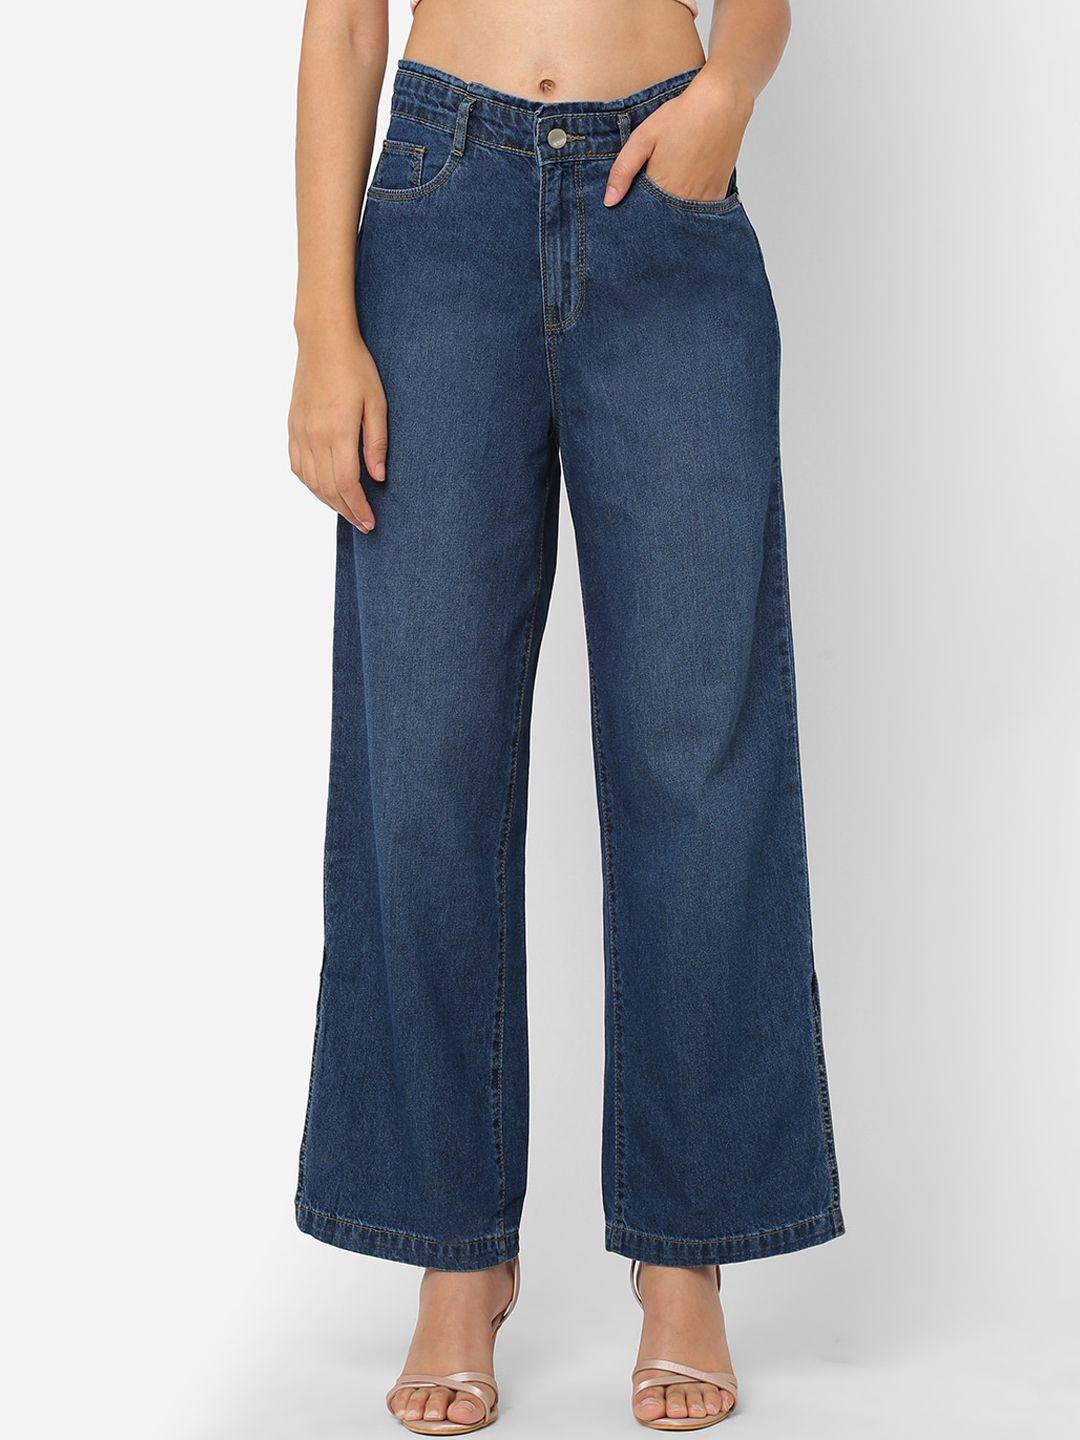 kraus jeans women wide leg high-rise light fade cotton jeans